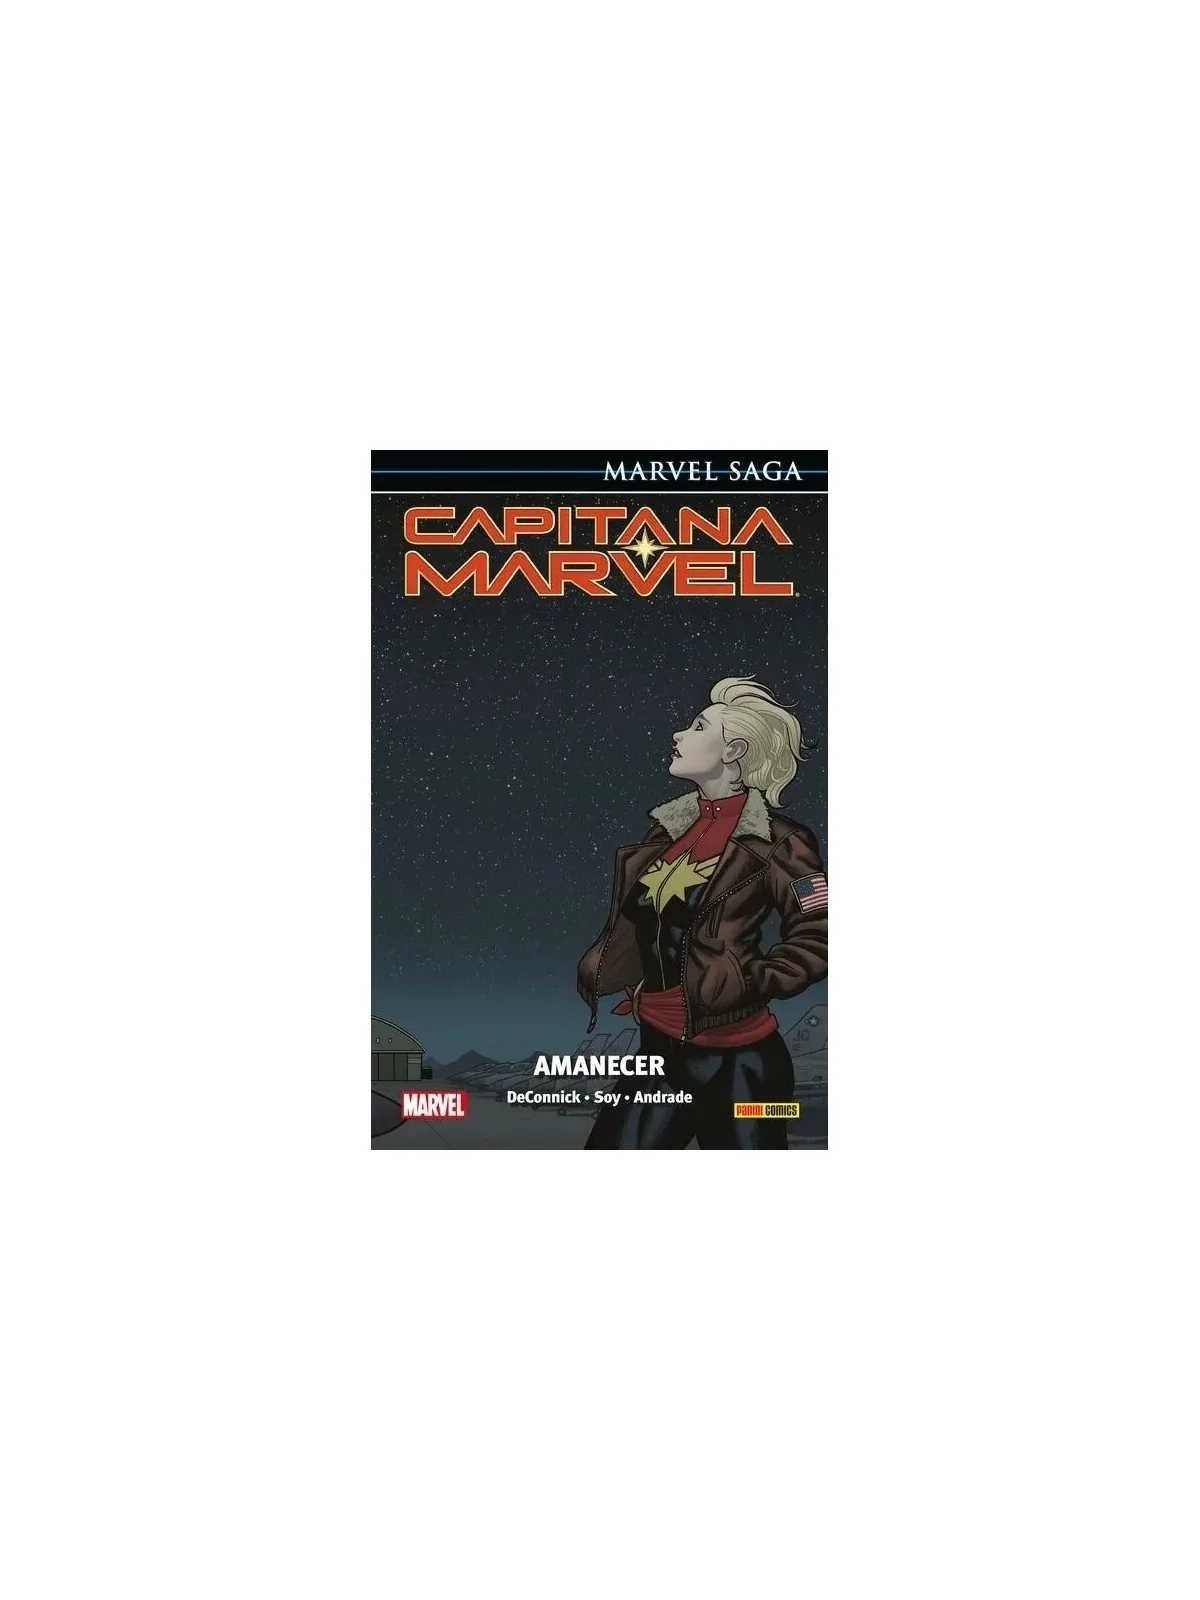 Comprar Marvel Saga. Capitana Marvel 02 barato al mejor precio 15,20 €